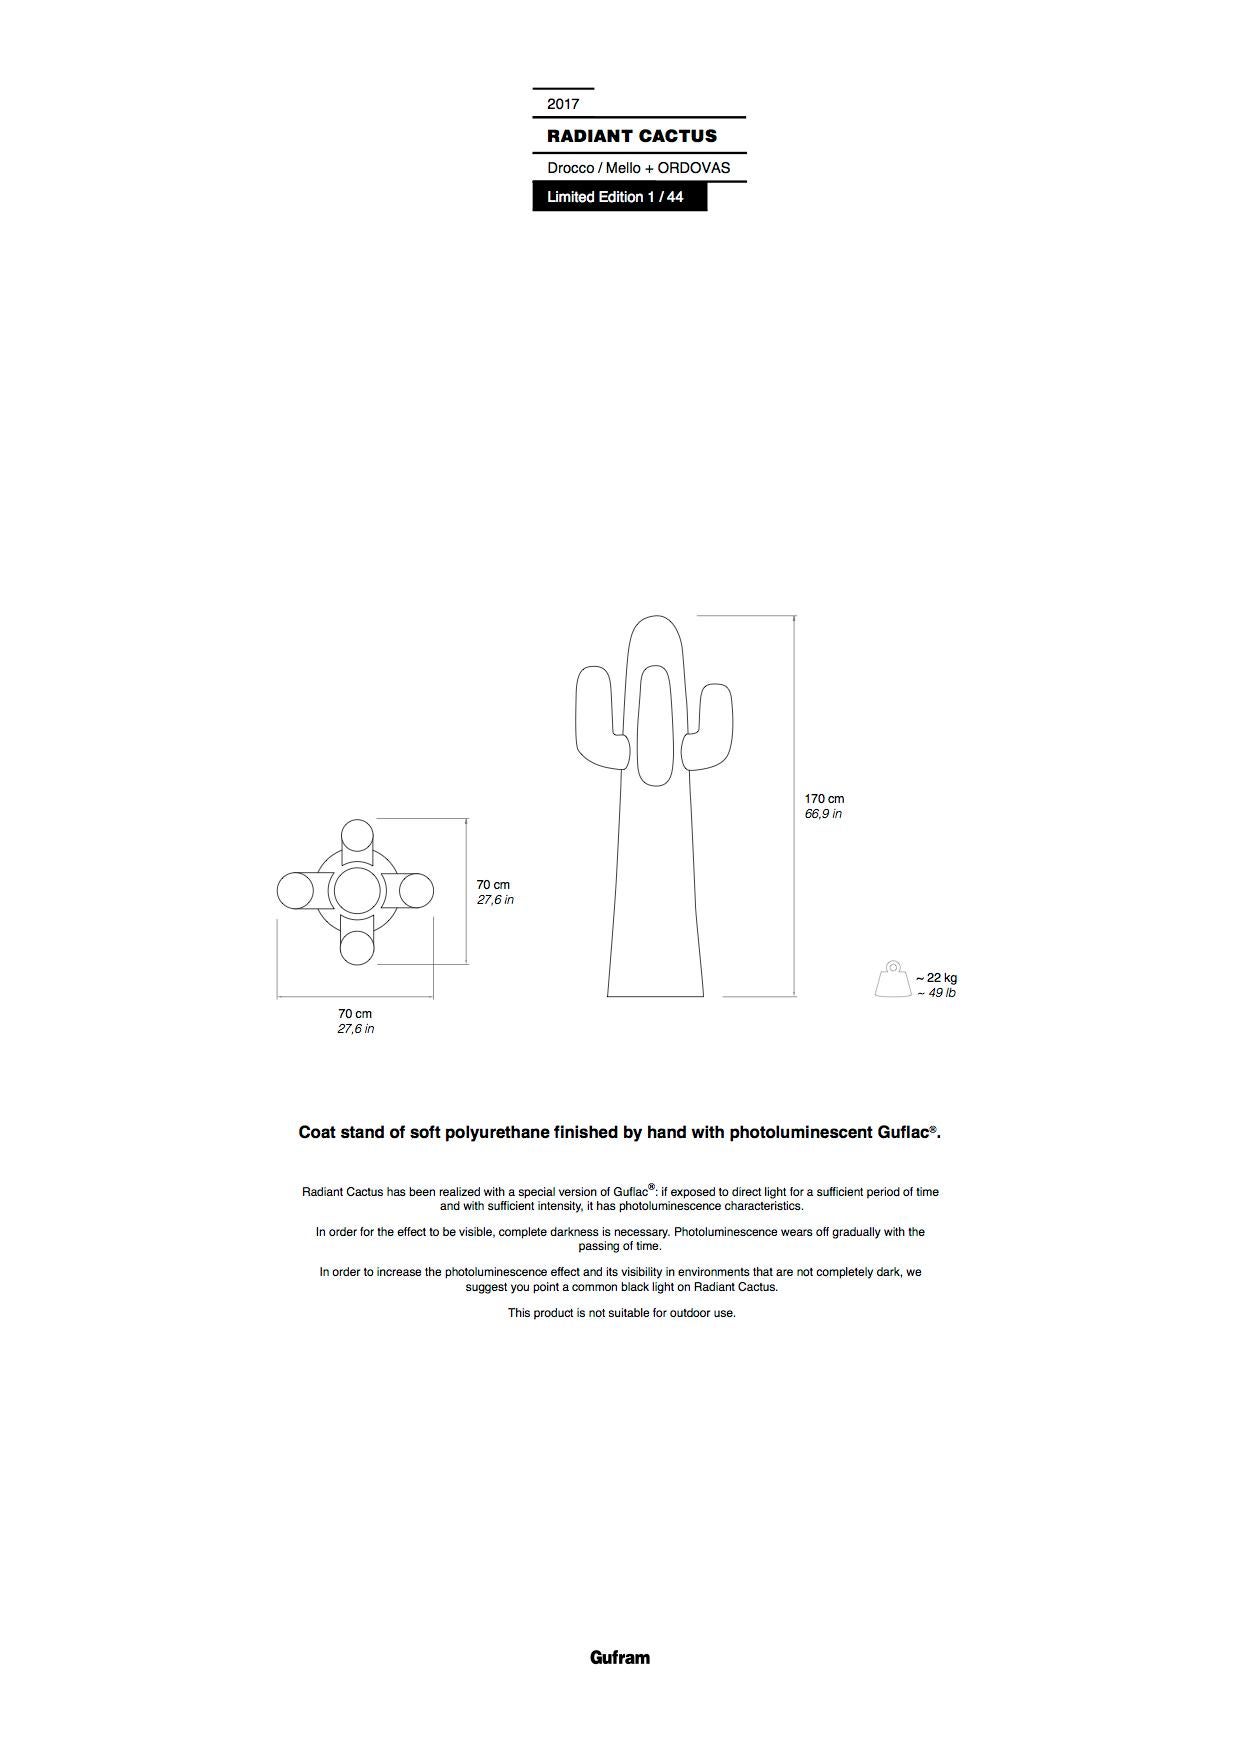 Mousse Cactus Radiant - Traîneau de ciselure sculptural de Gufram par Drocco & Mello et Ordovas en vente